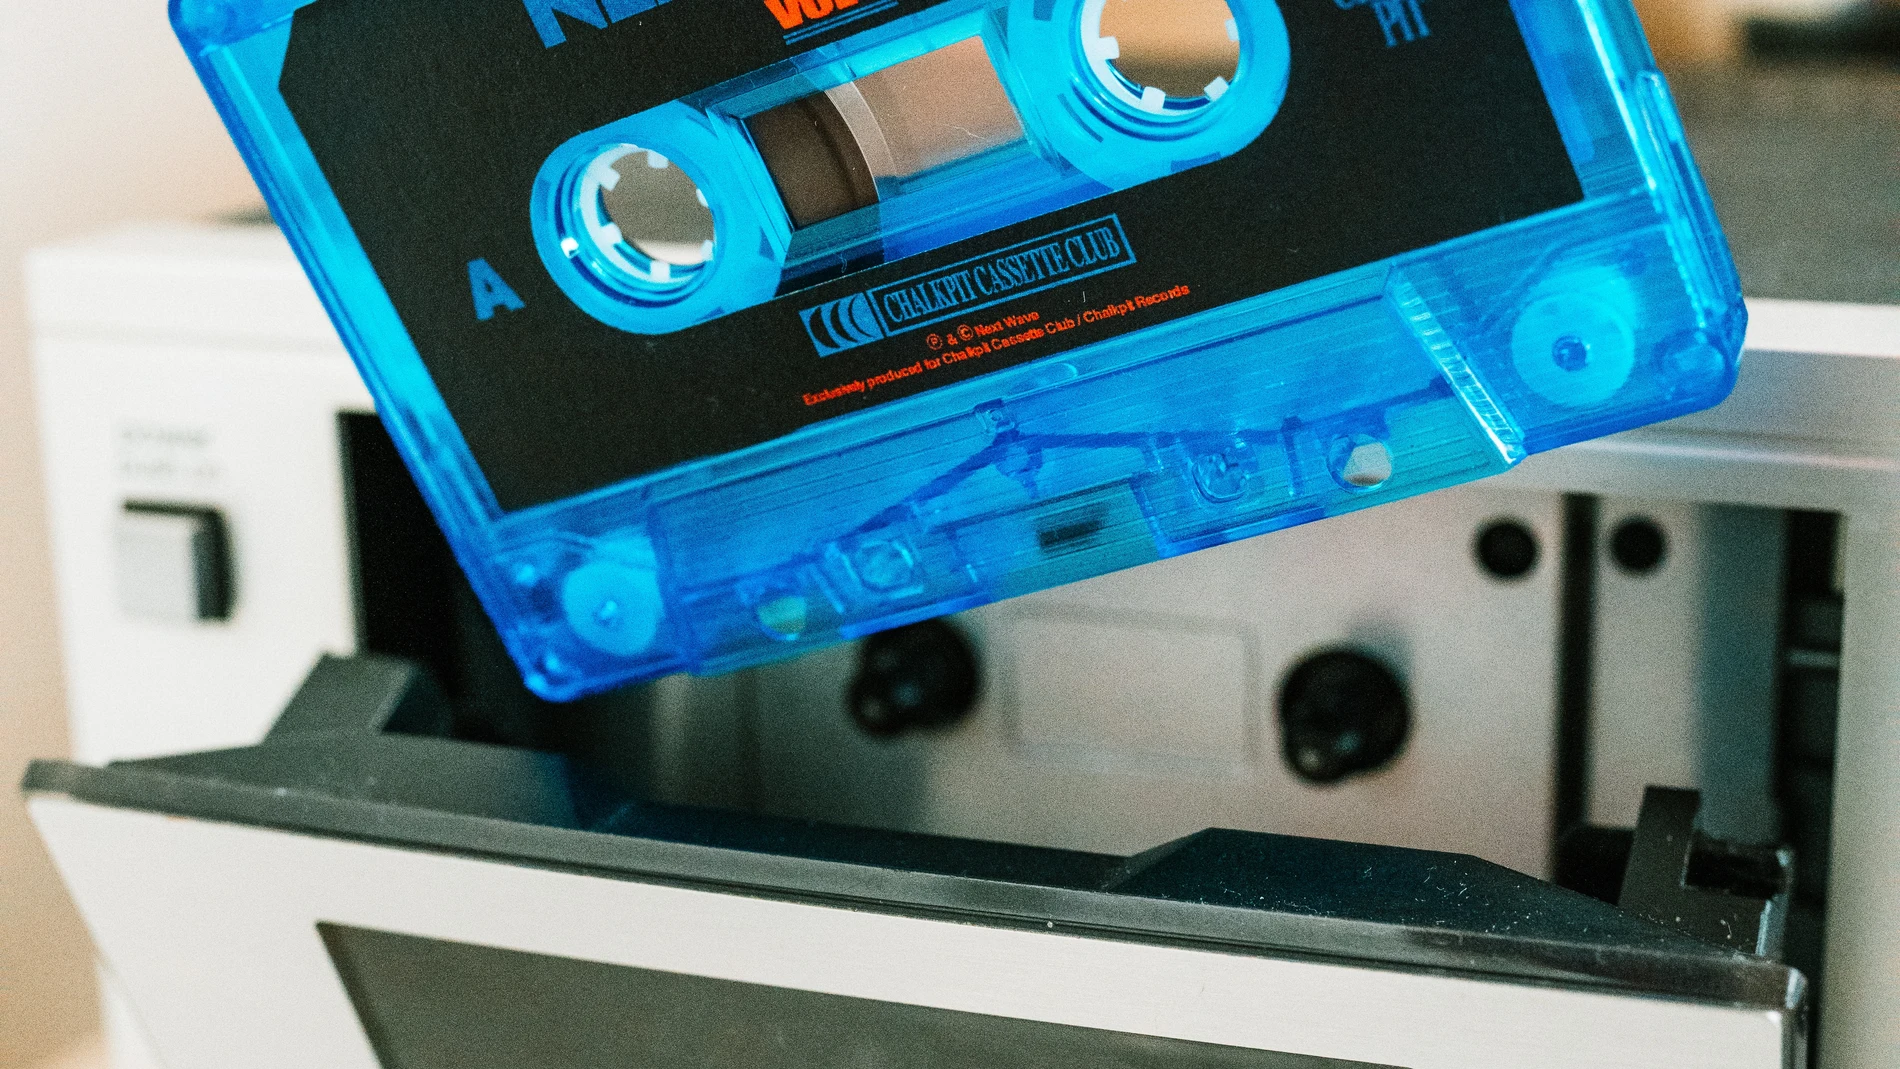 La generación Z y la generación Alfa nunca sabrá lo que es tener que "rebobinar la cinta" en un radio cassette